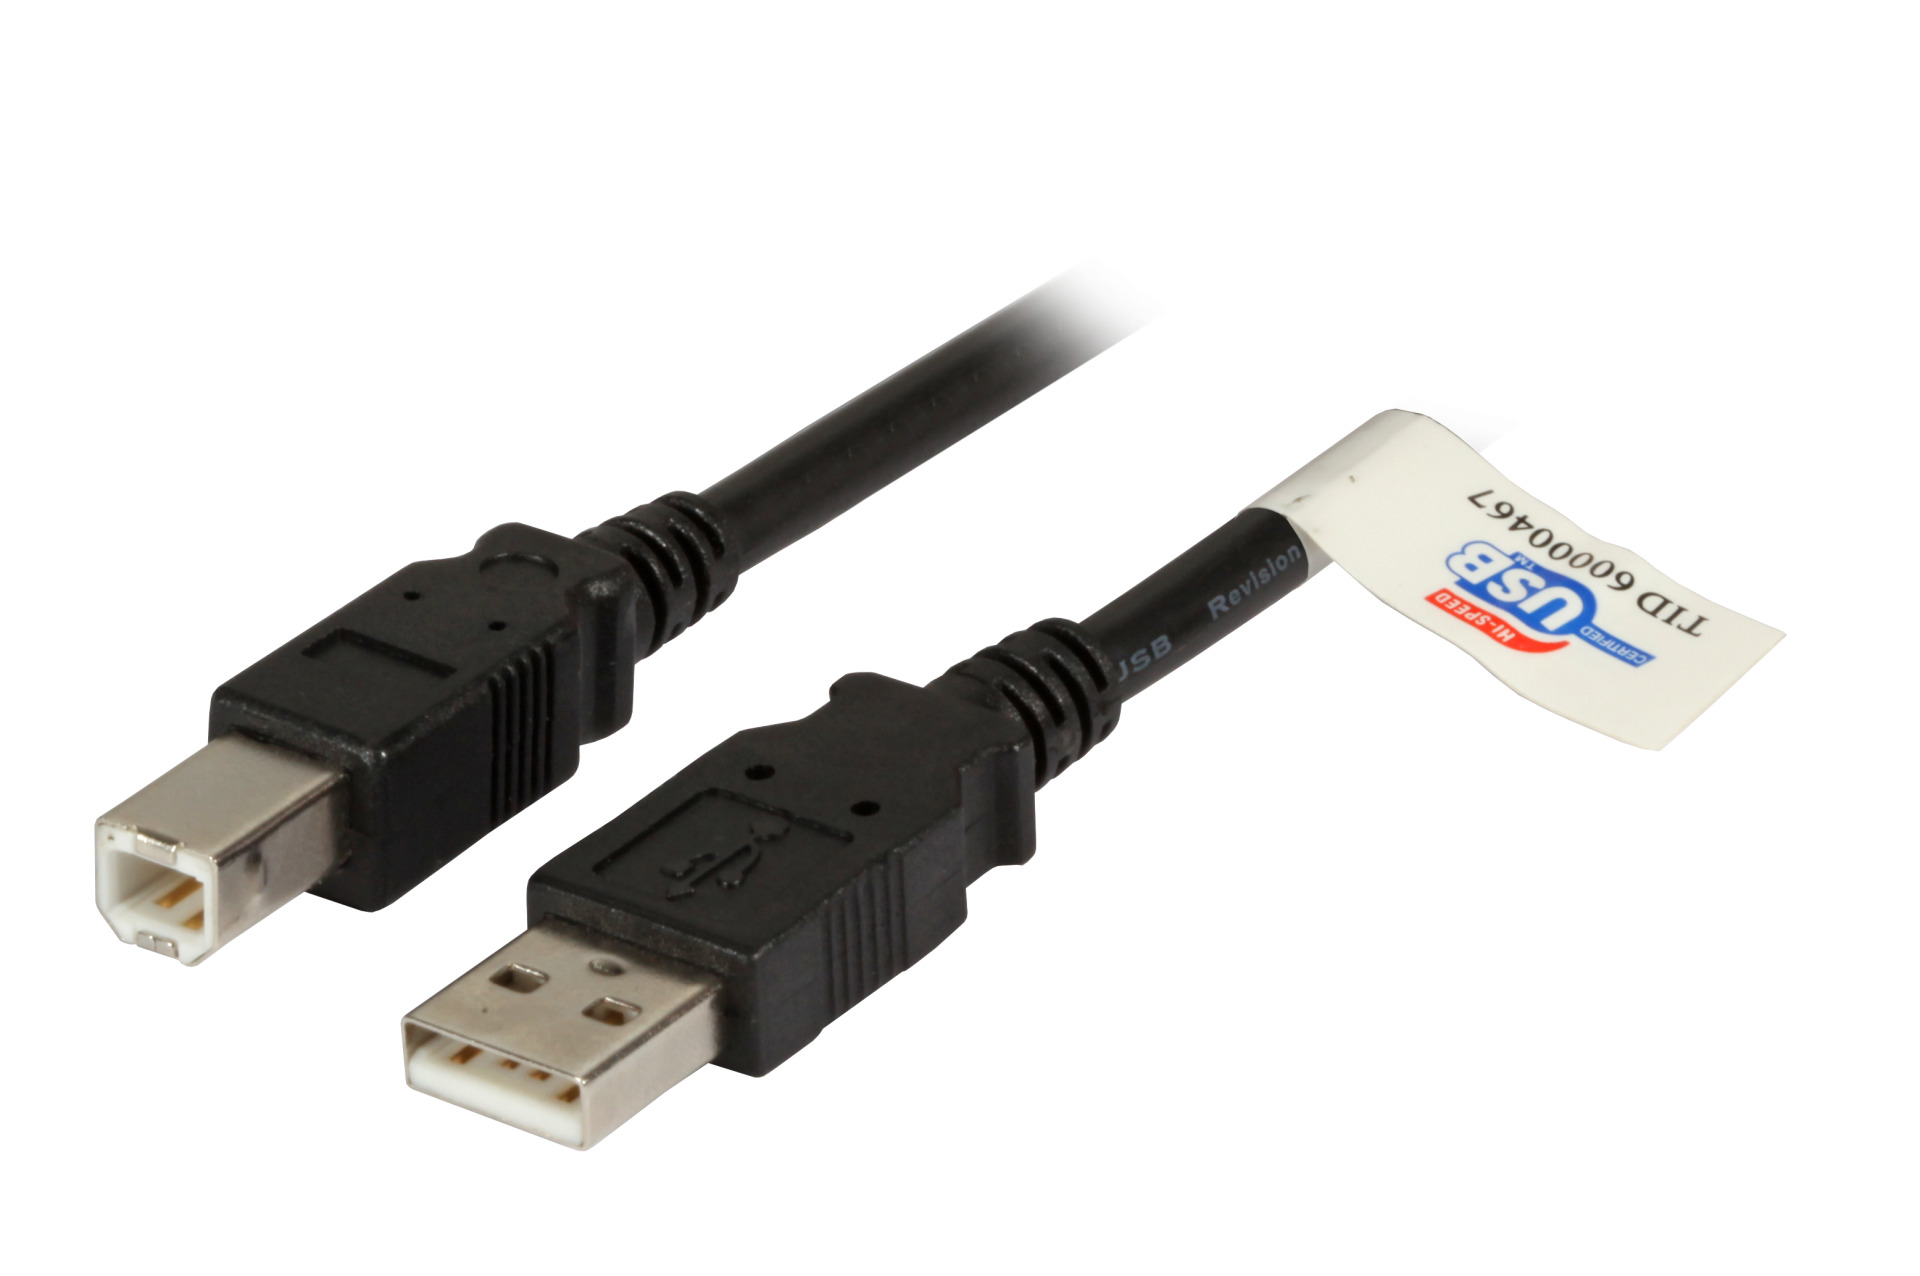 USB2.0 Connection Cable A-B, M-M, 1.8m, black, Premium